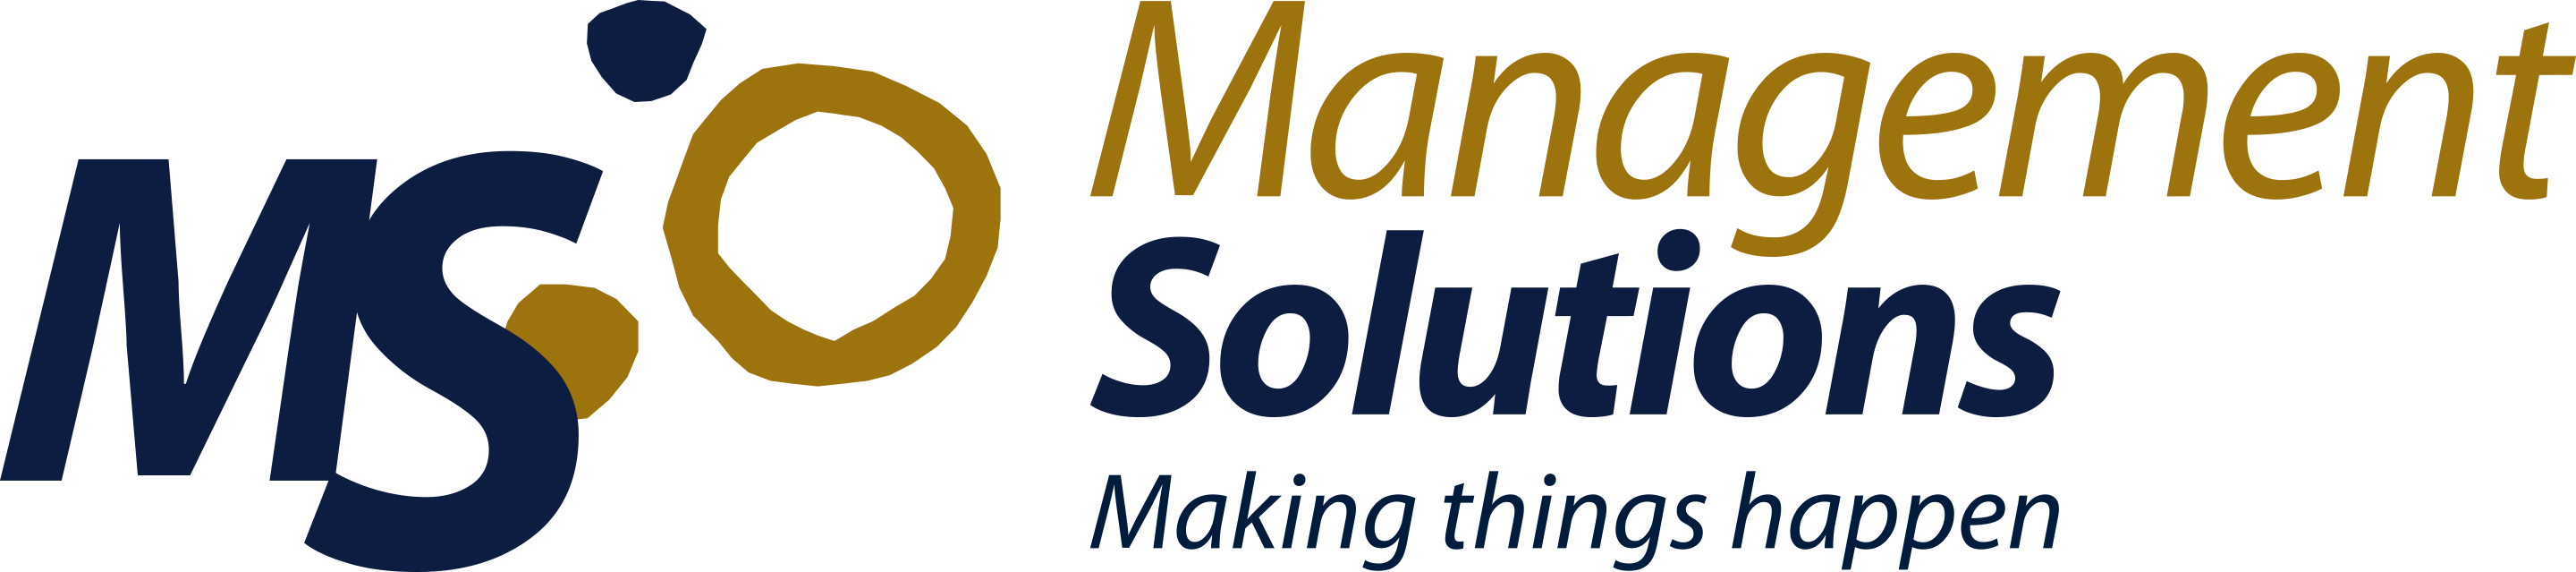 GMS Management Solutions S.L.